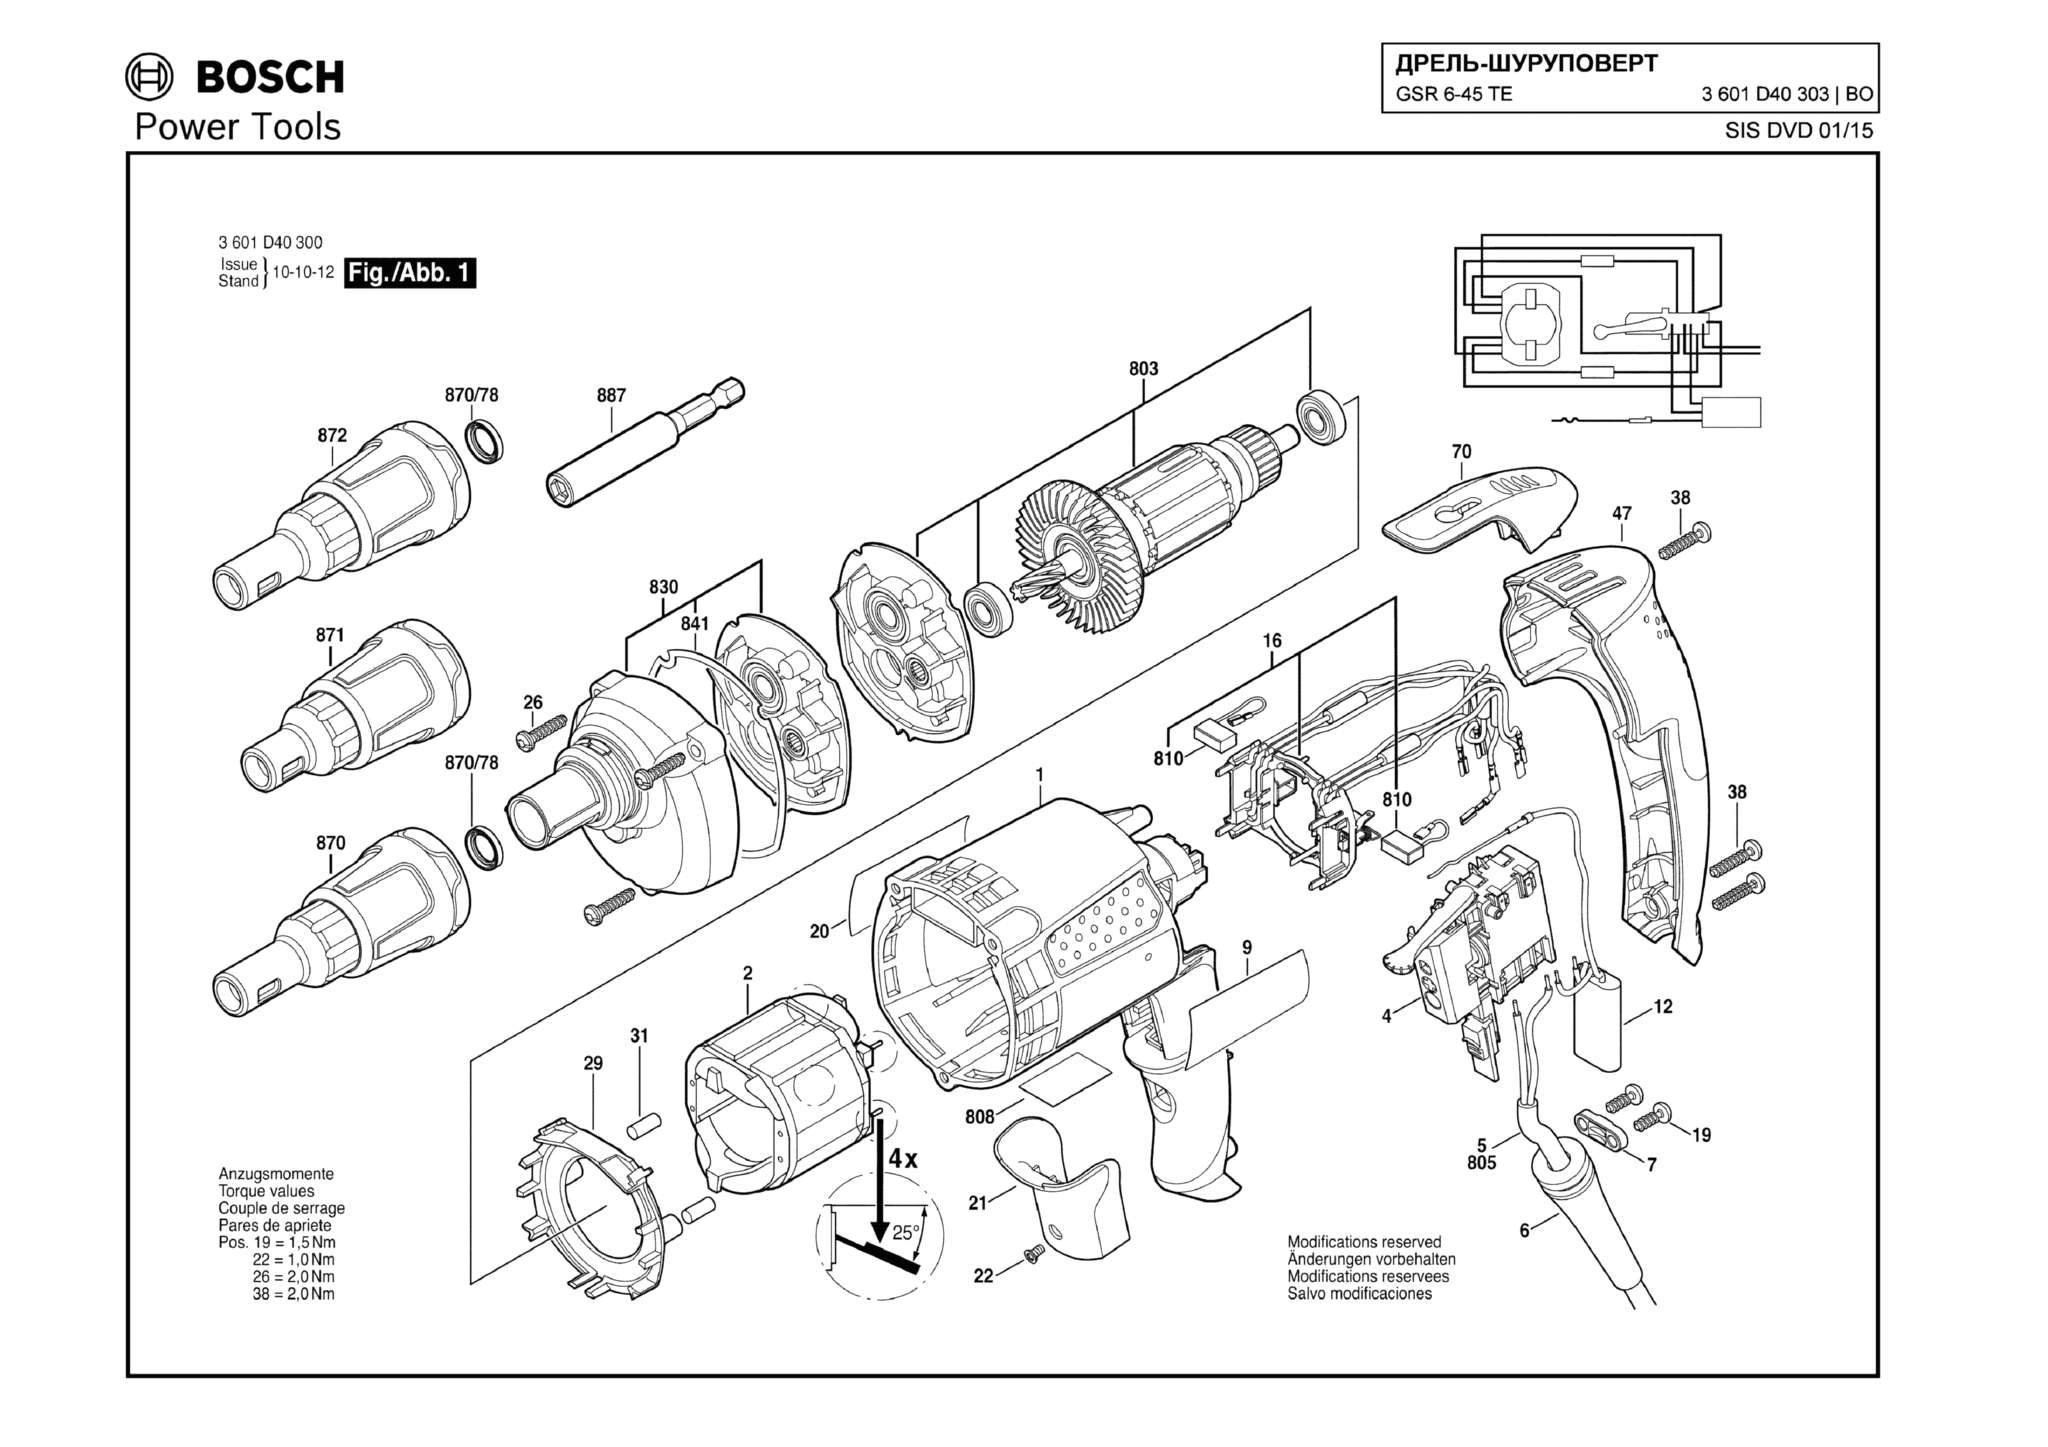 Запчасти, схема и деталировка Bosch GSR 6-45 TE (ТИП 3601D40303)